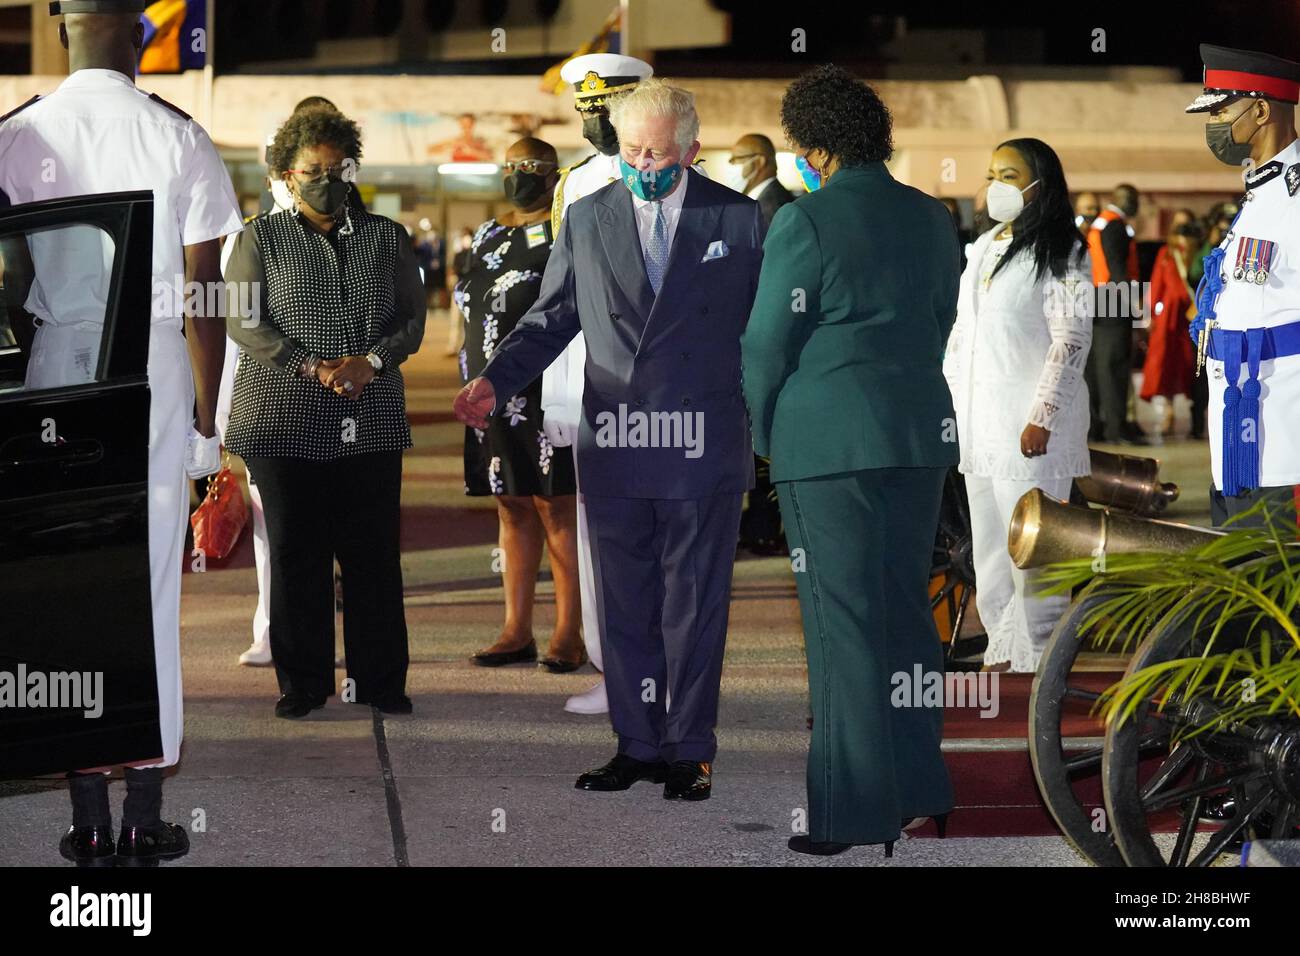 Der Prinz von Wales plaudert mit Sandra Mason (rechts, grün), der ehemaligen Generalgouverneurin und designierten Präsidentin von Barbados, bei seiner Ankunft am Grantley Adams International Airport, Bridgetown, Barbados. Bilddatum: Sonntag, 28. November 2021. Stockfoto